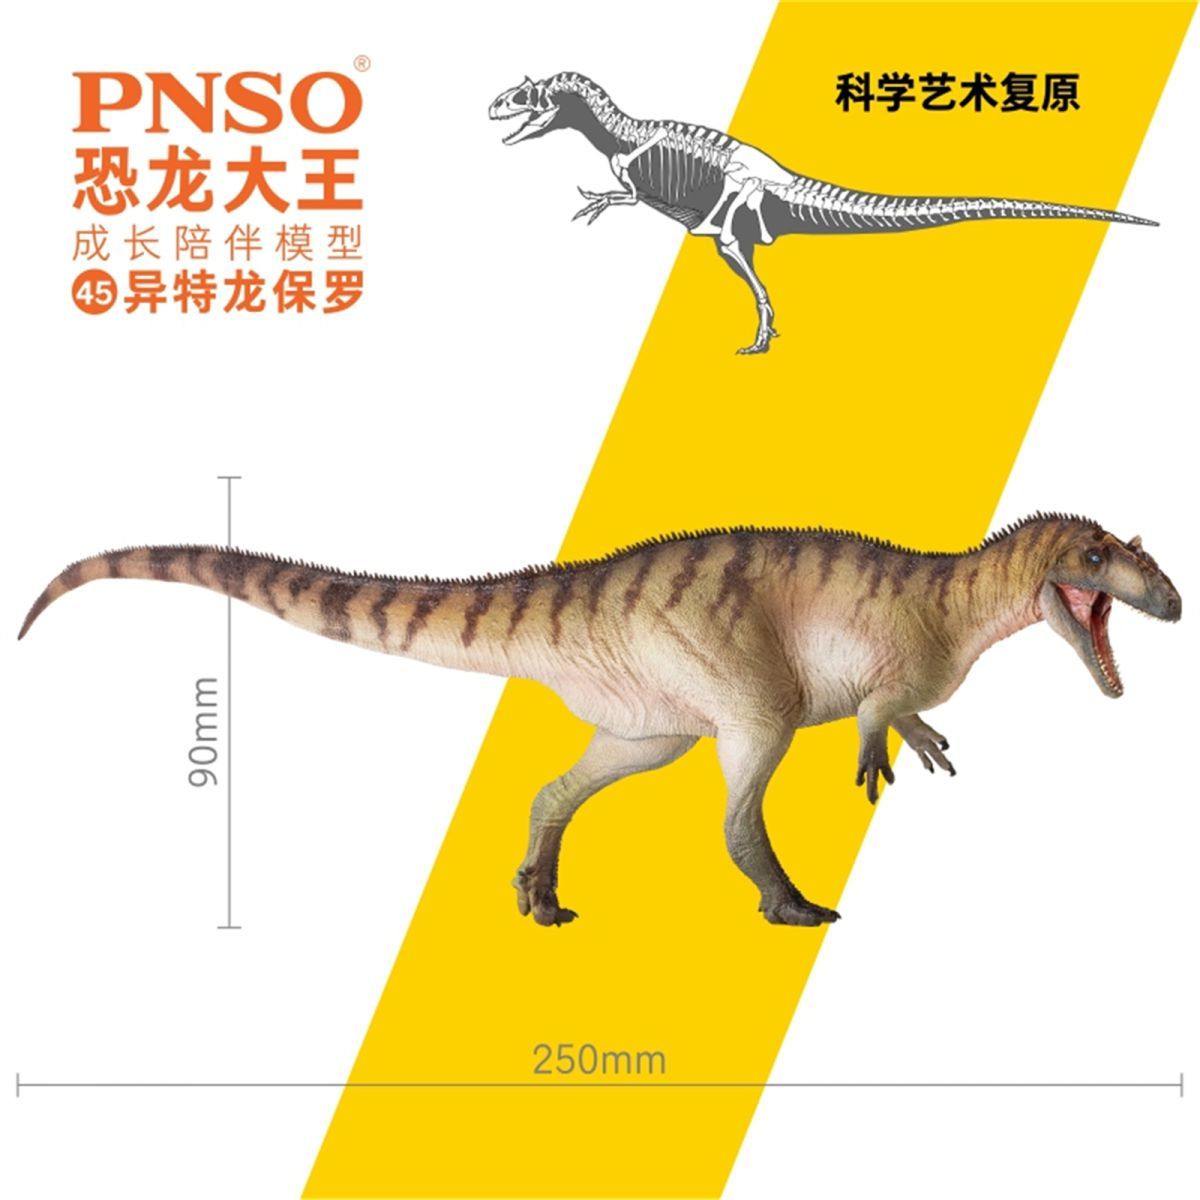 Pnso 成長シリーズ アロサウルス 恐竜 動物 フィギュア プラモデル おもちゃ 模型 リアル Pvc 恐竜好き 誕生日 プレゼント 完成品 25cm級 その他 売買されたオークション情報 Yahooの商品情報をアーカイブ公開 オークファン Aucfan Com